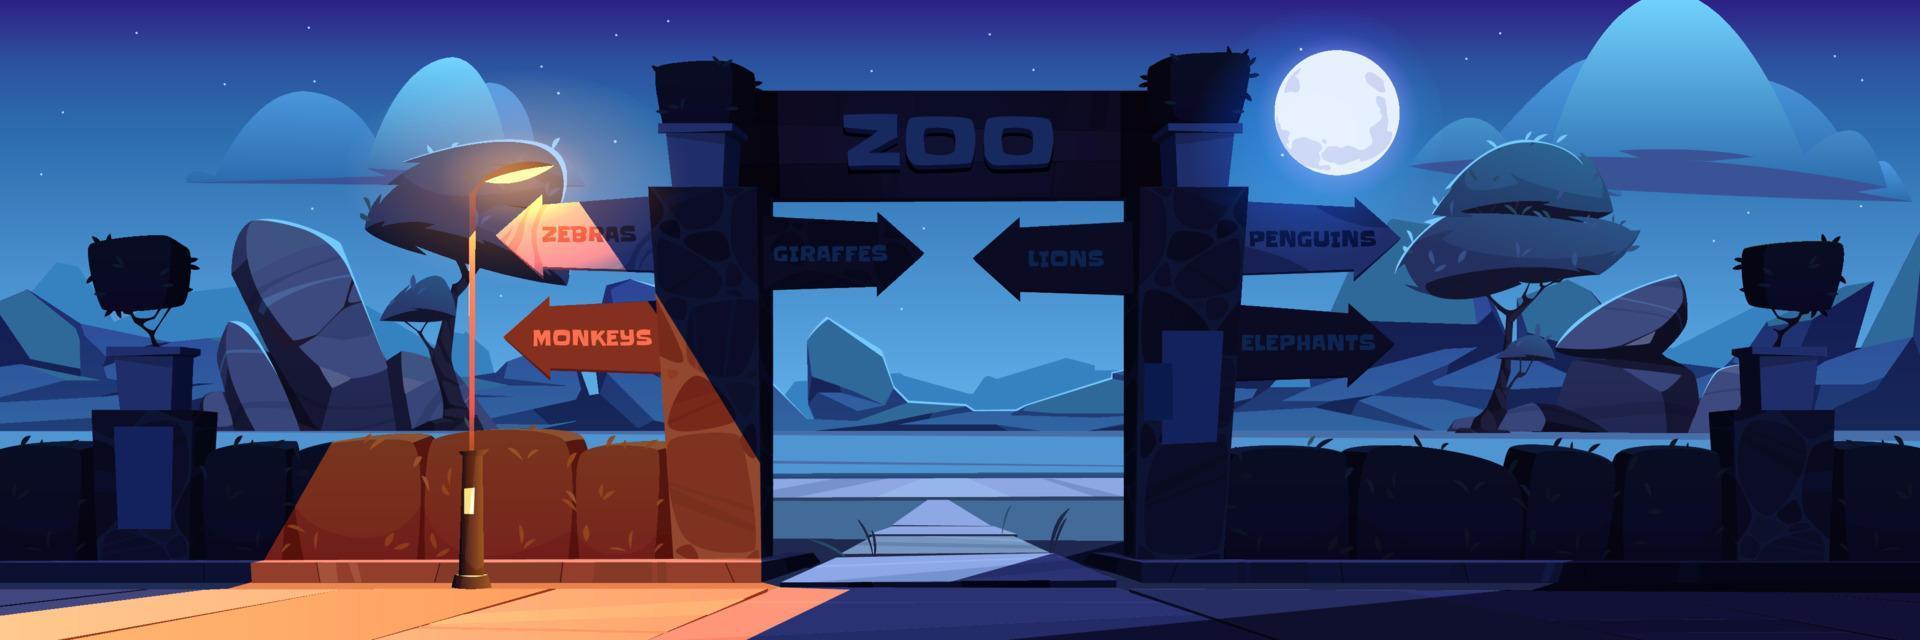 ilustração vetorial da entrada do zoológico à noite vetor